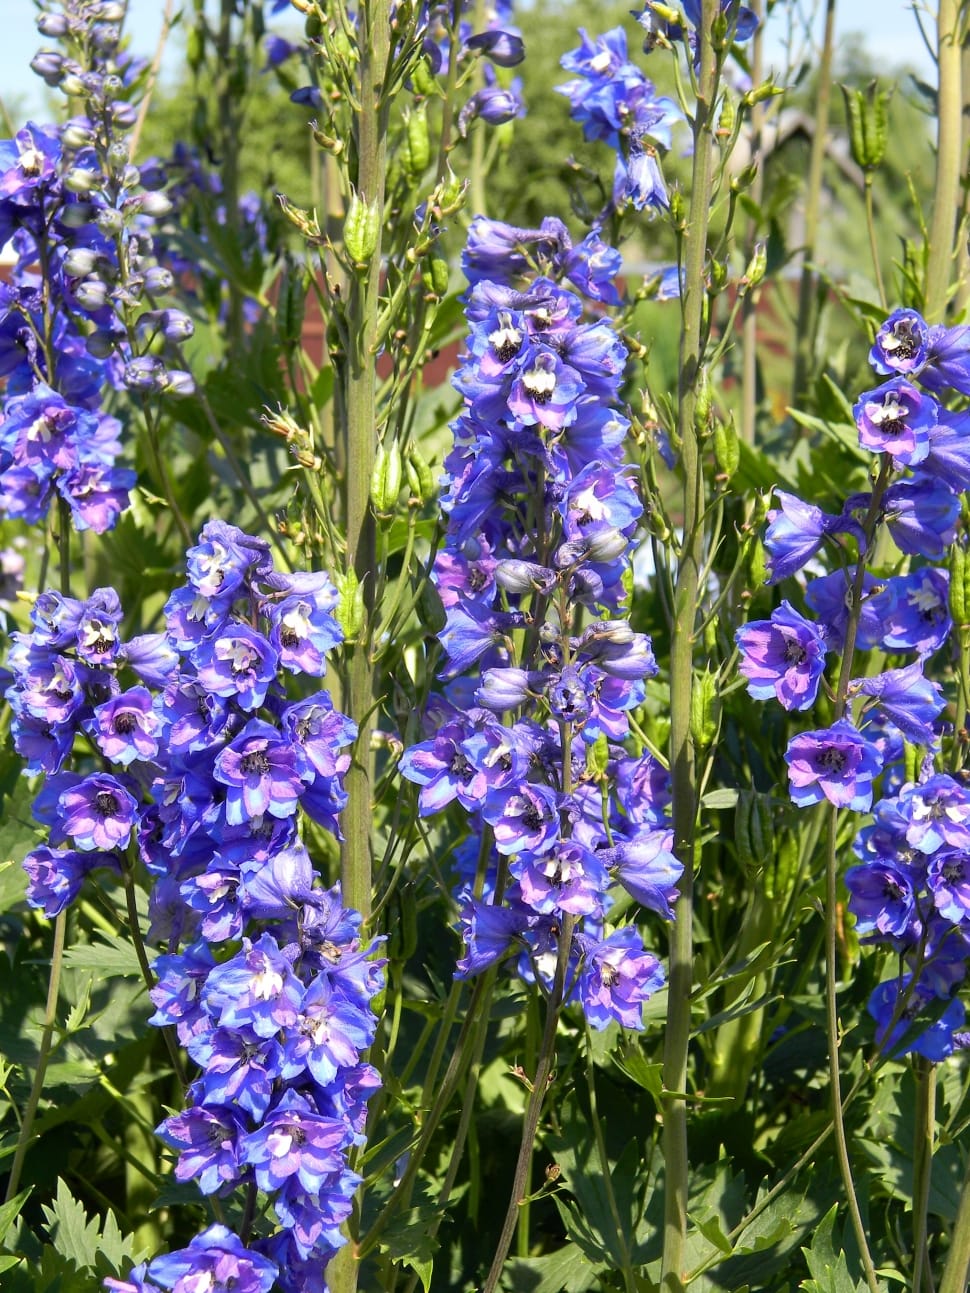 Purple Delphinium, Delphinium, growth, plant preview